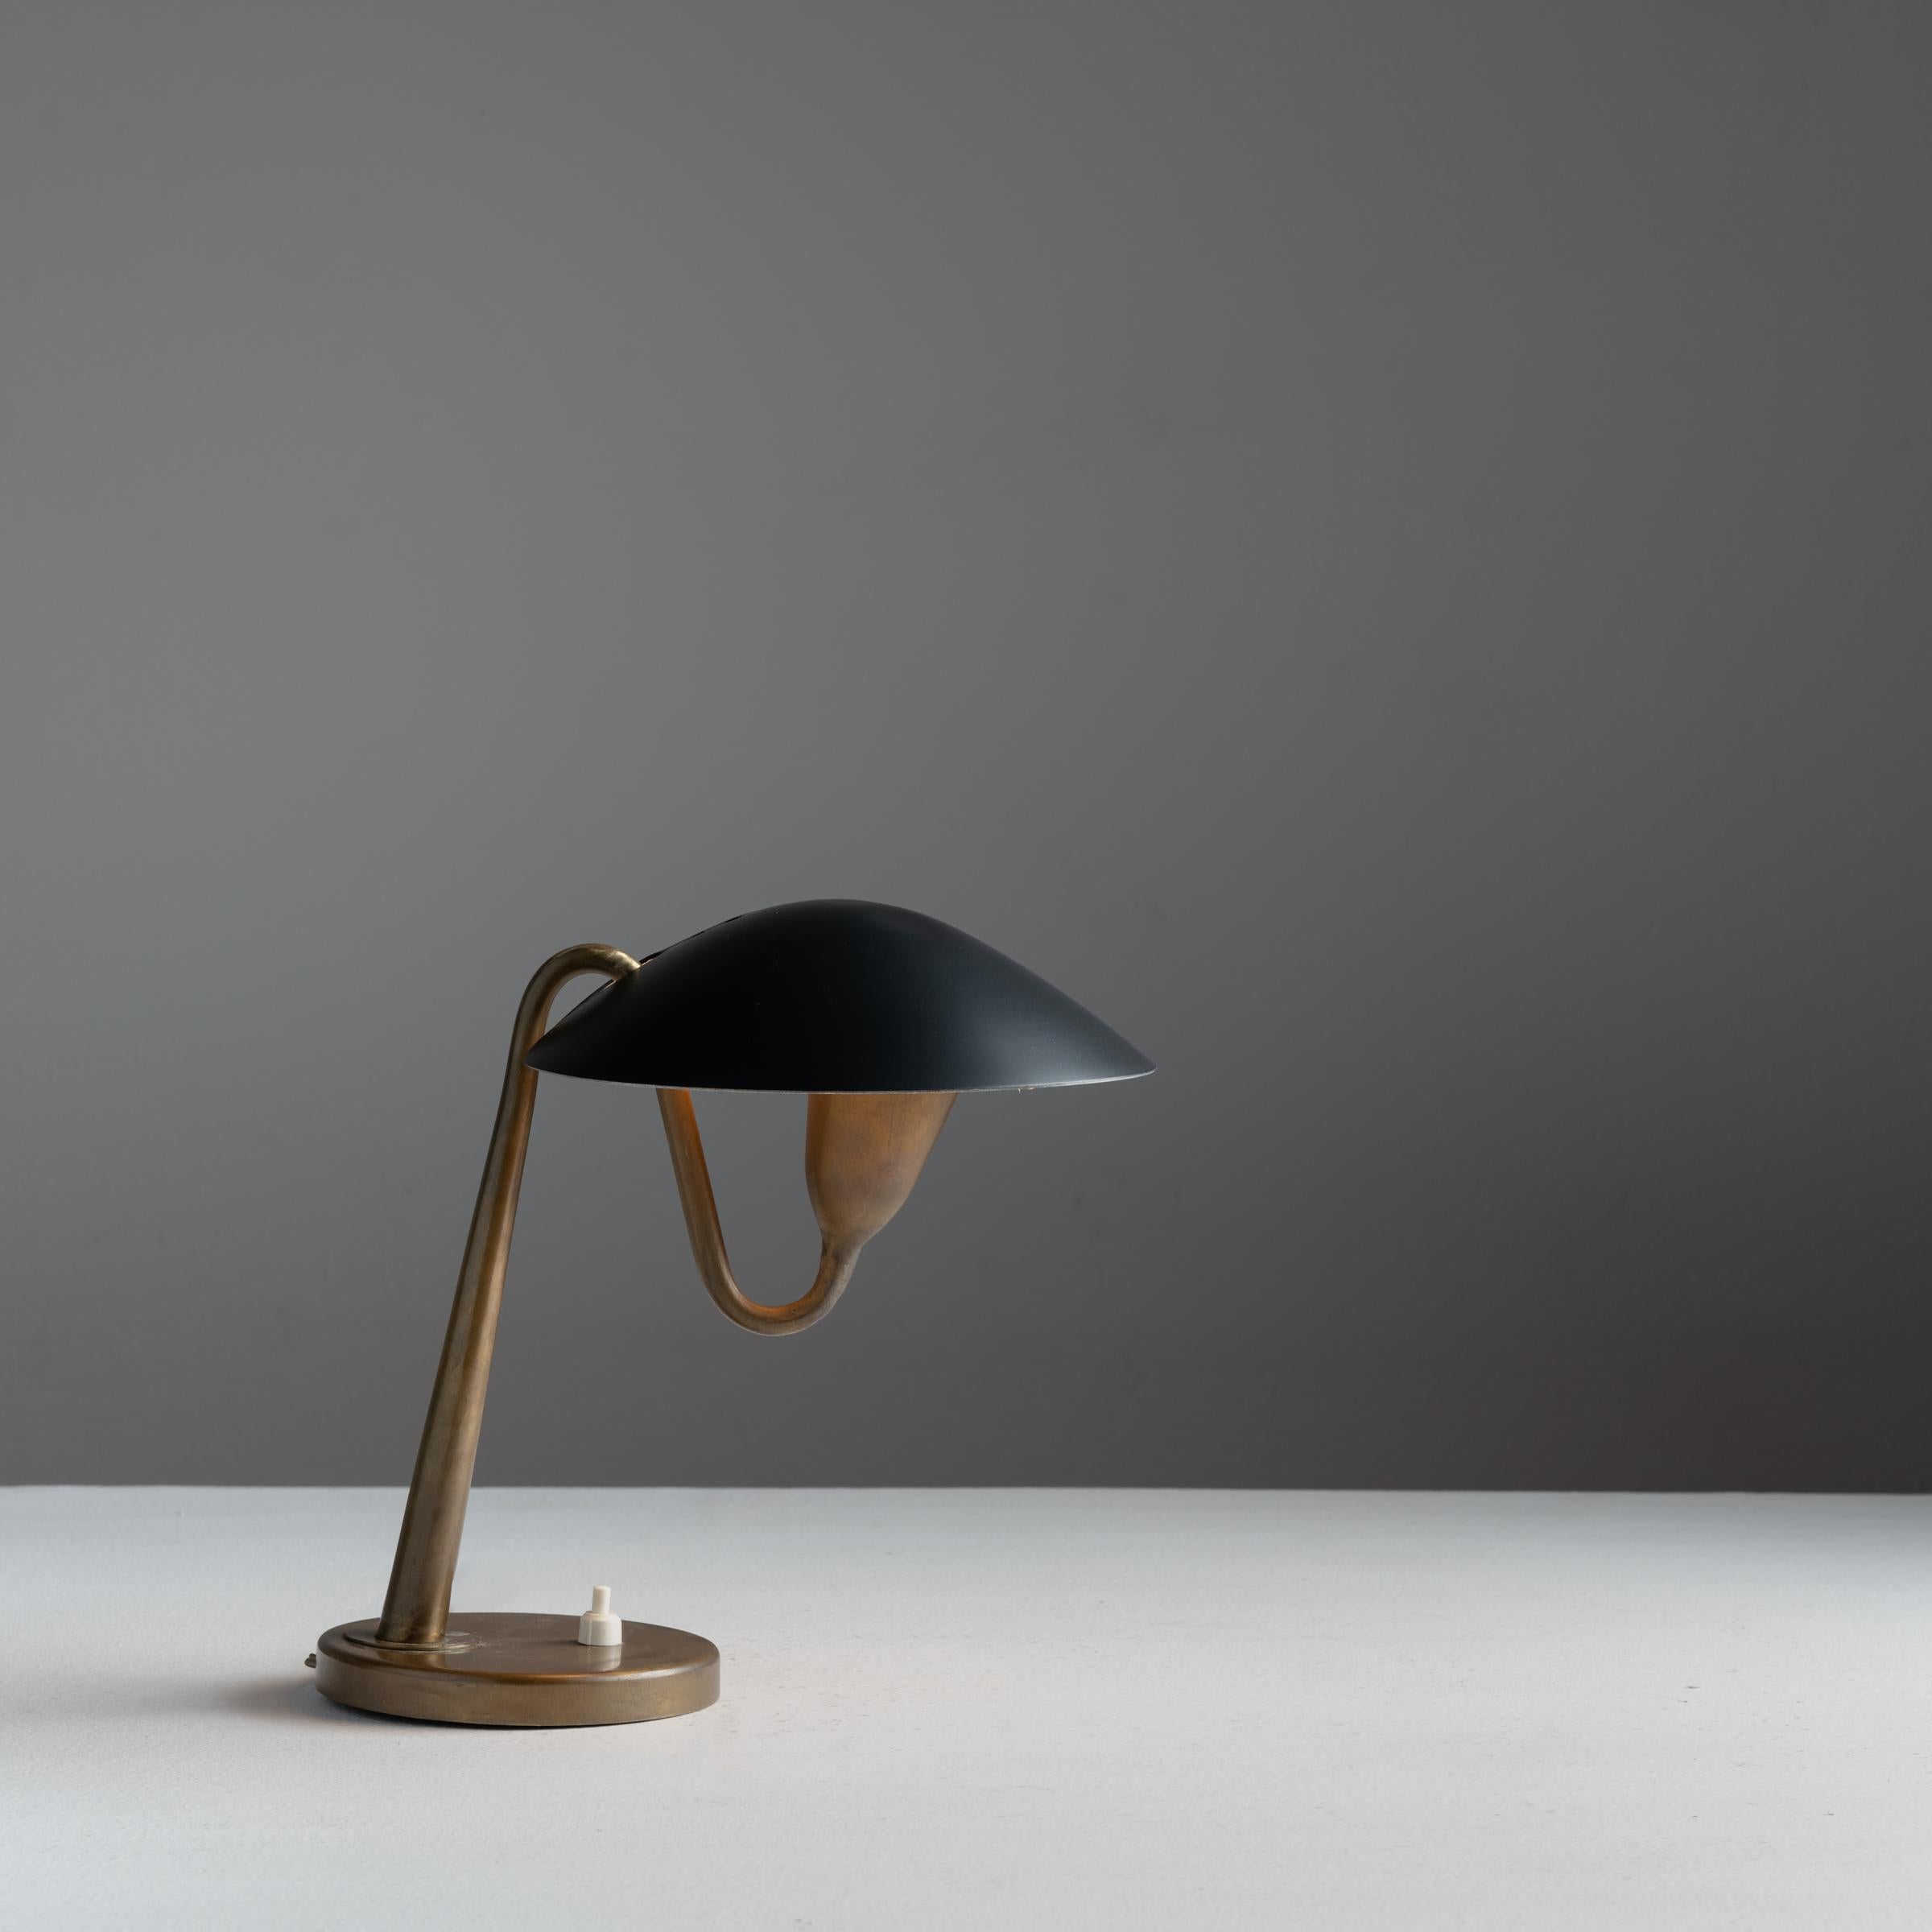 Lampe de table Model 200 de Giuseppe Ostuni pour Oluce. Conçu en Italie, vers les années 1950. Câblé pour les États-Unis. Nous recommandons une ampoule à culot E12 de 75w maximum.